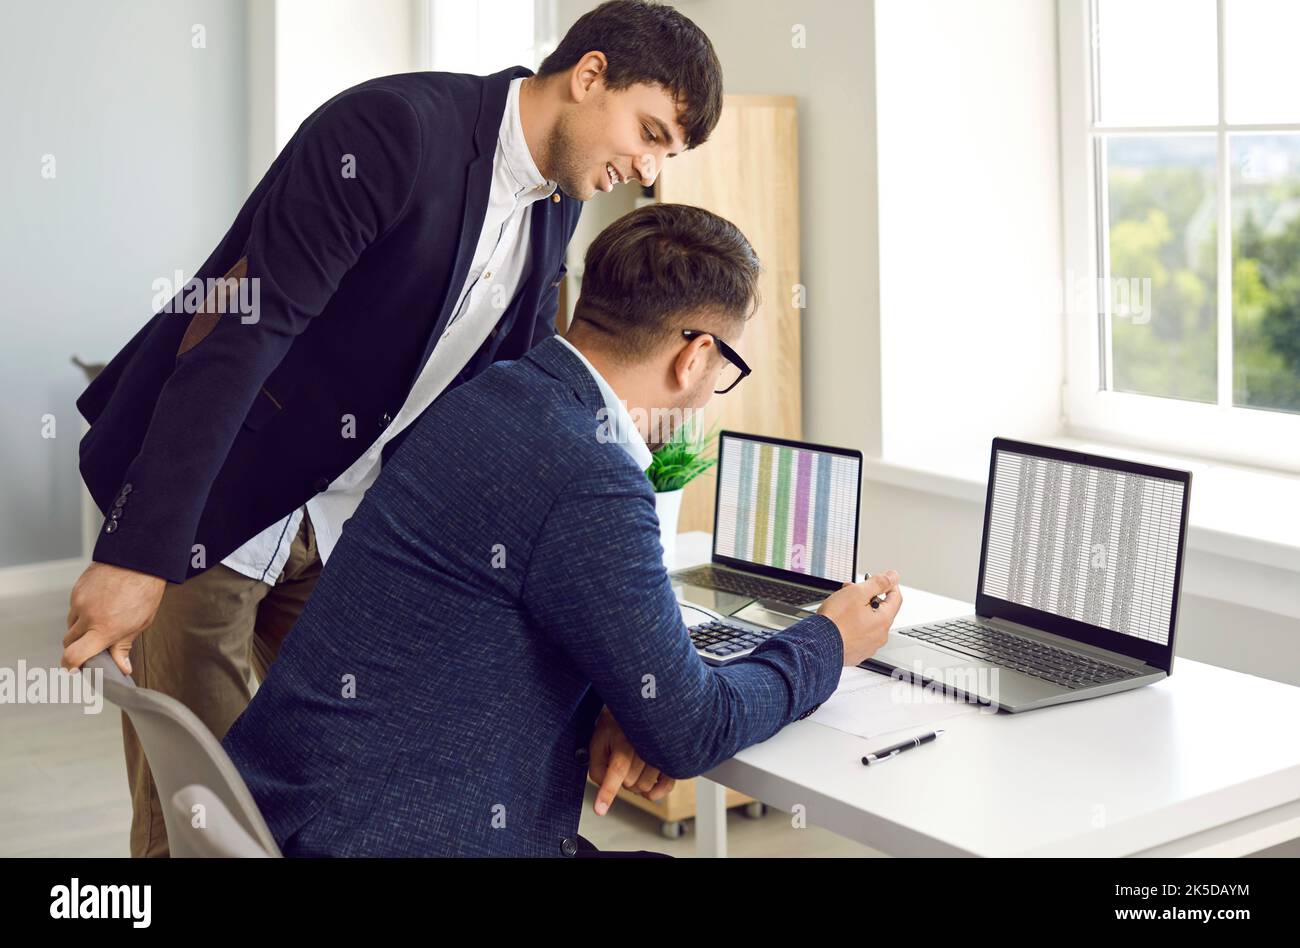 Lächelnde Geschäftsleute, die mit einem Laptop arbeiten, reden, kommunizieren, Startup planen, im Büro arbeiten. Zwei Geschäftskollegen in einem Meeting Stockfoto